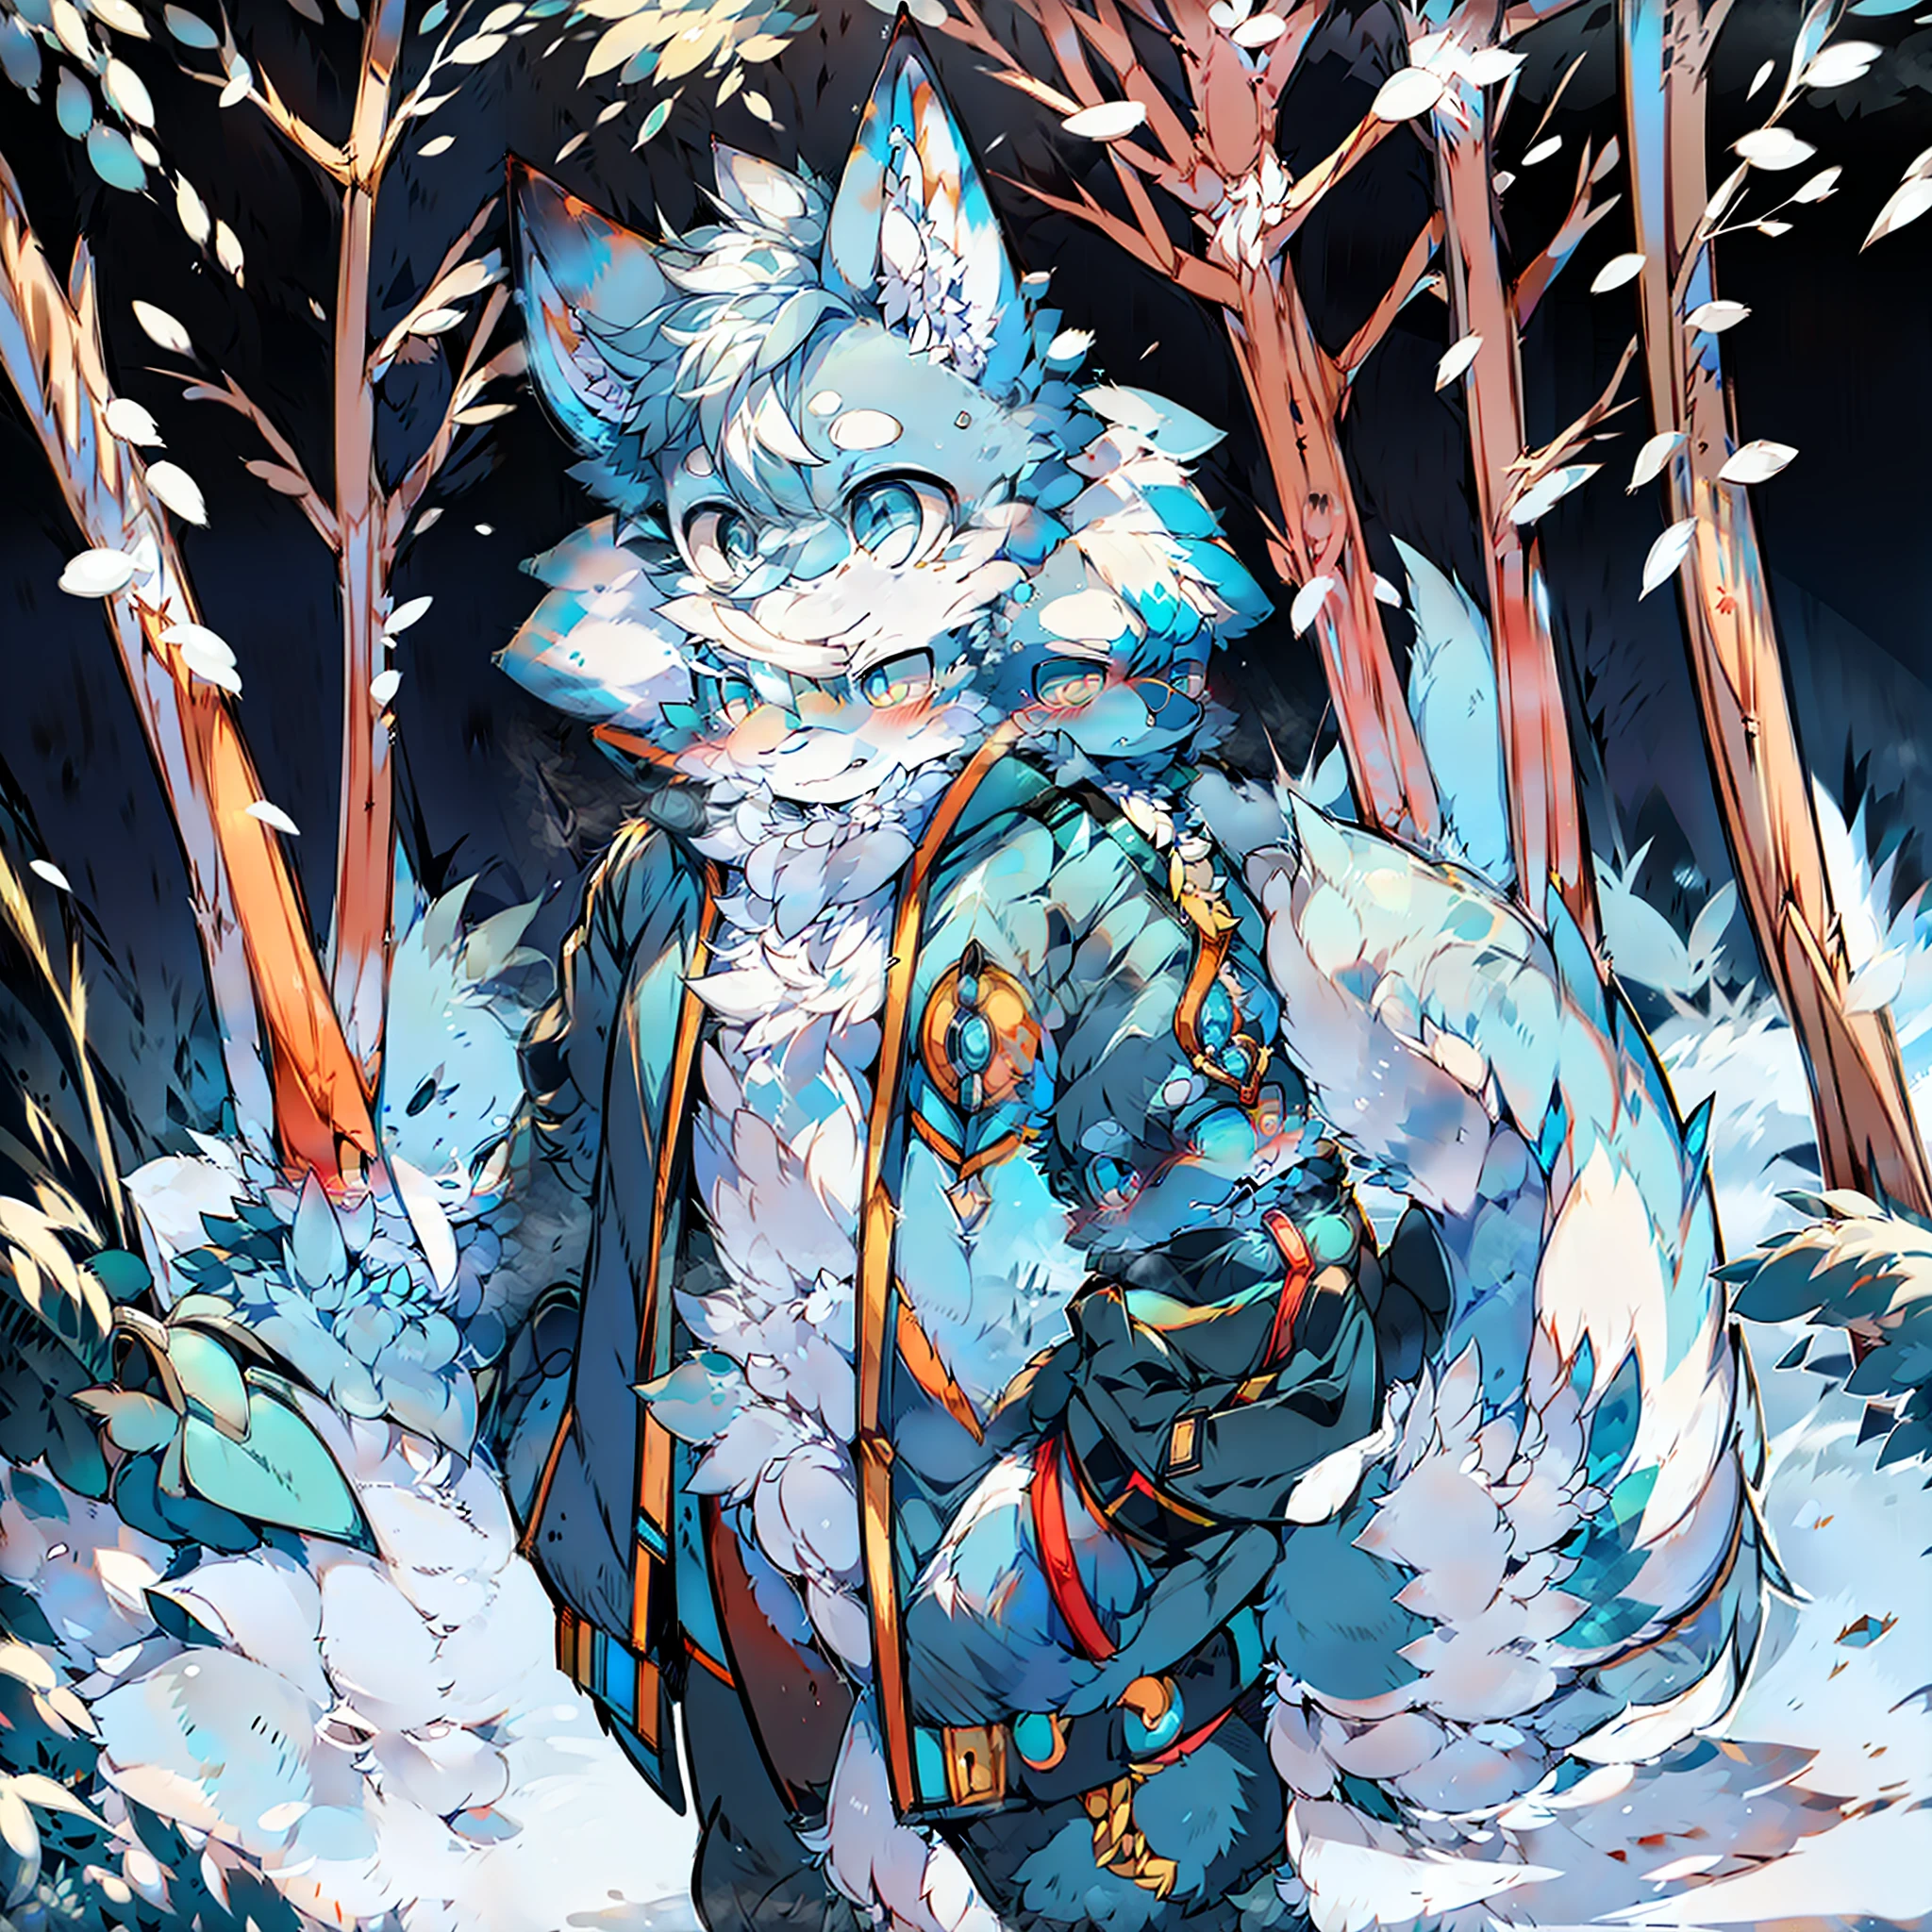 毛皮の生えた雄の2匹の青白模様のキツネ、明るい瞳、大きな尻尾、青い綿のジャケットを着て立っている、雪山の雪